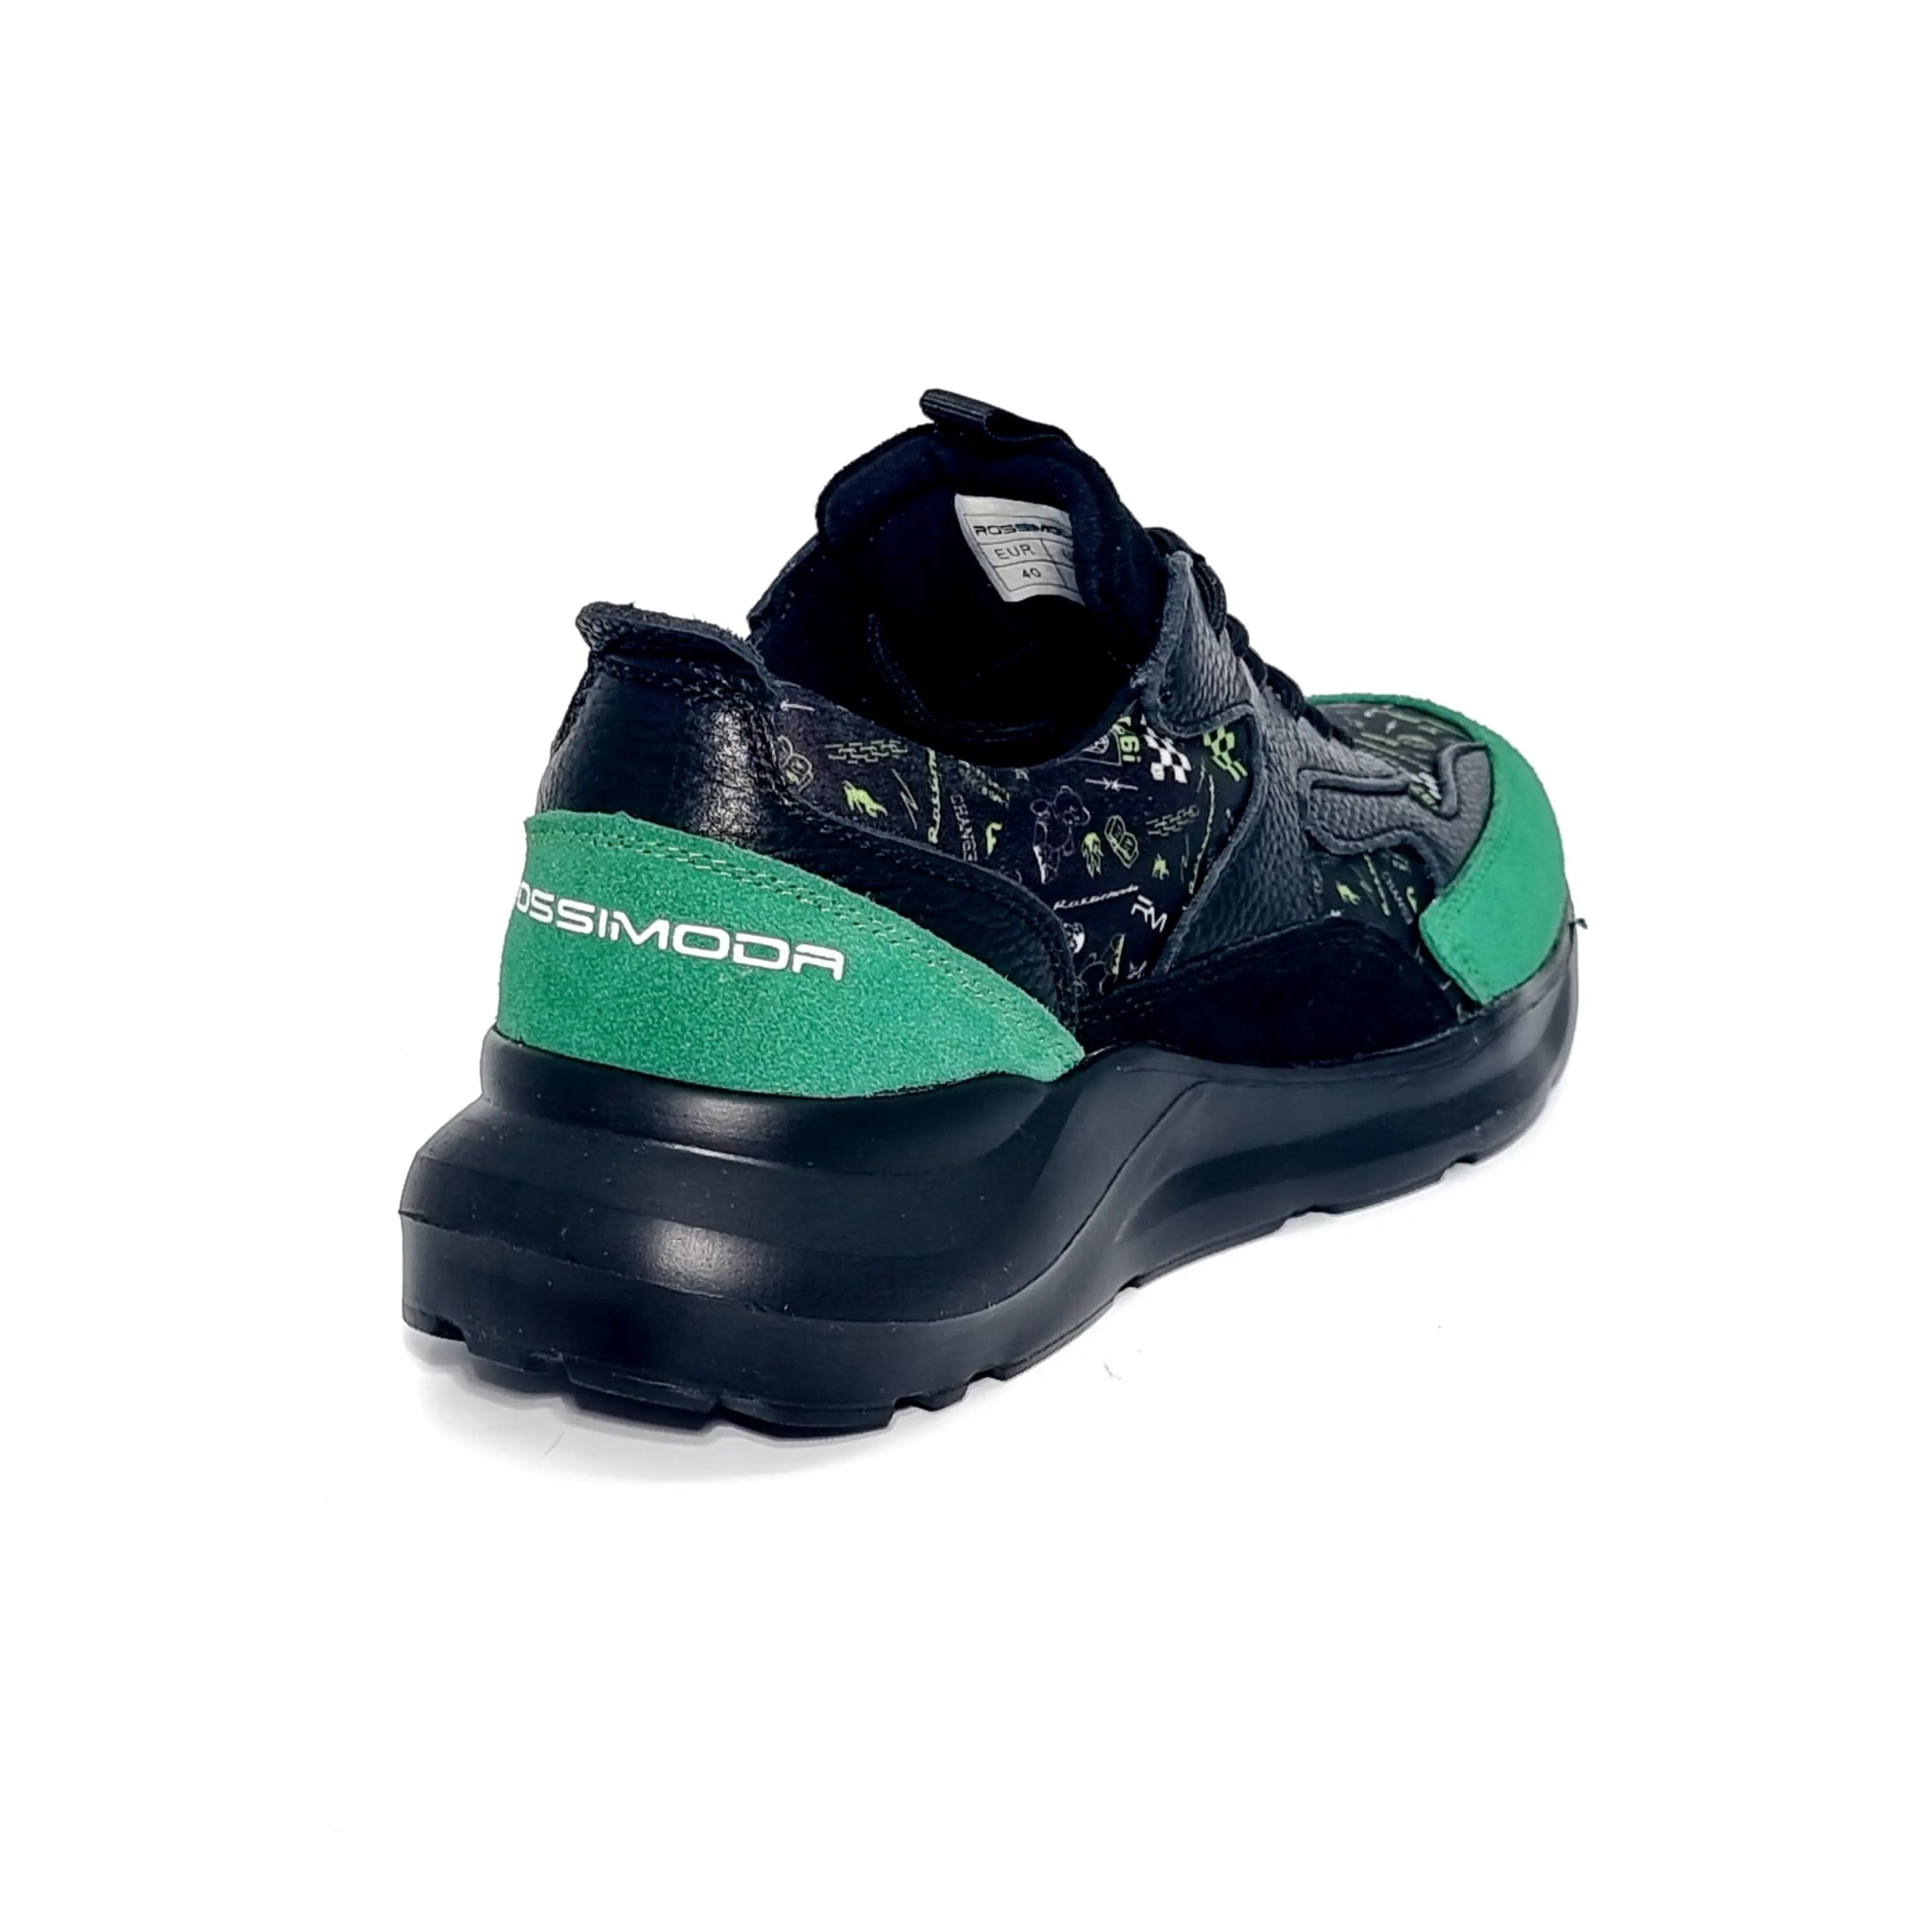 ROSSI MODA DEL MARE BLACK GREEN Sneakers | familyshoecentre